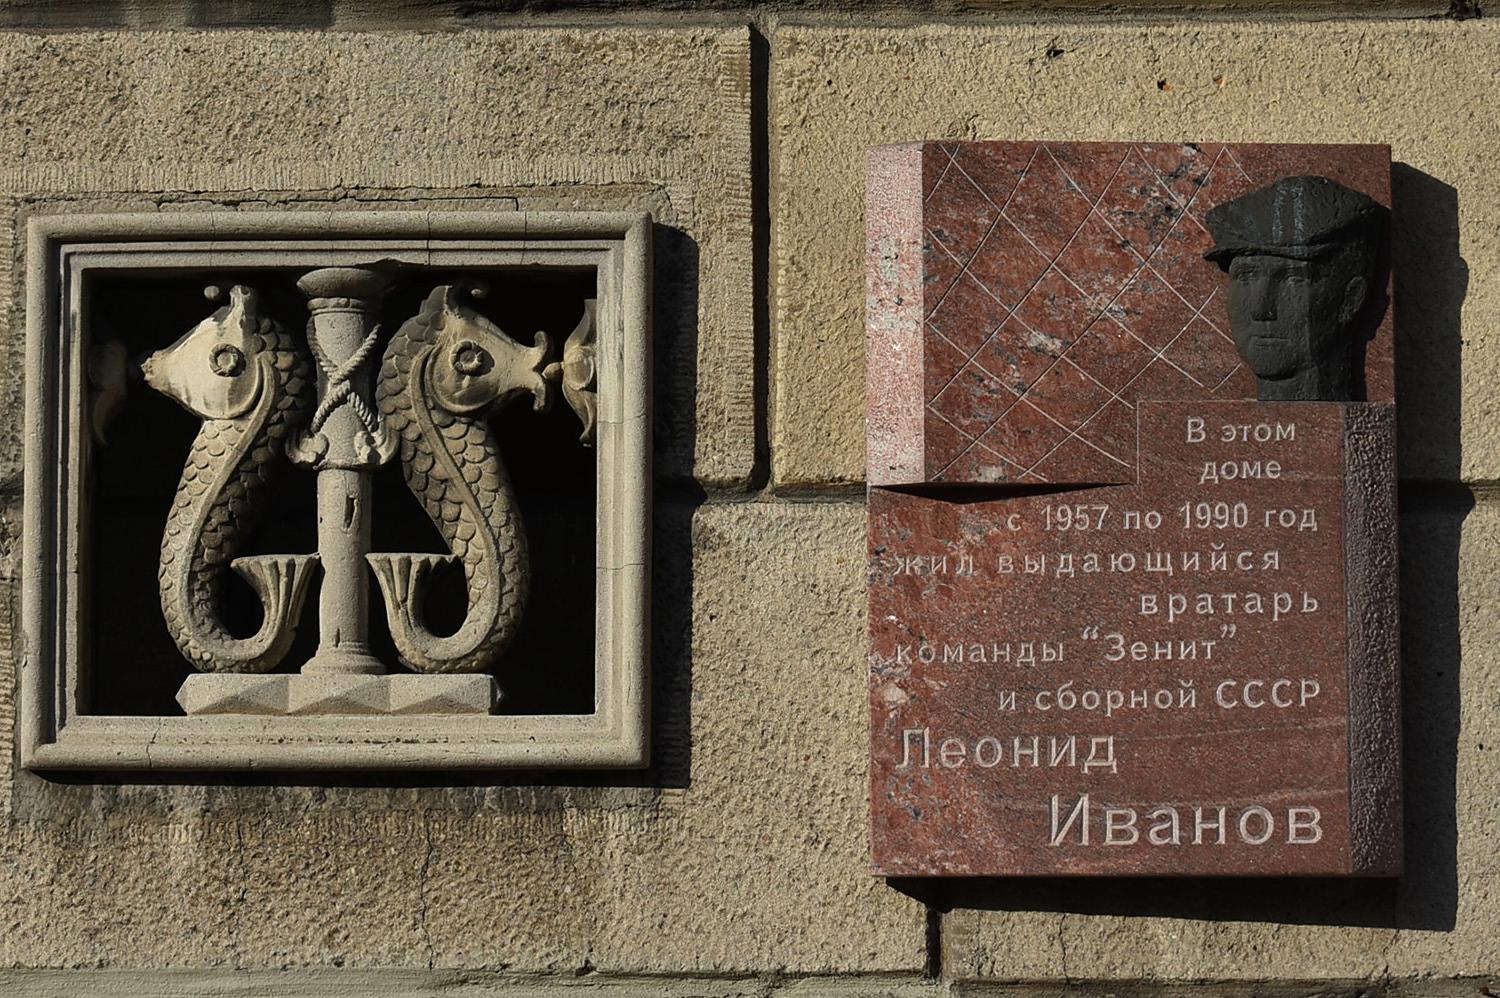 Sankt Petersburg, Кузнецовская улица, 46. Sankt Petersburg — Memorial plaques